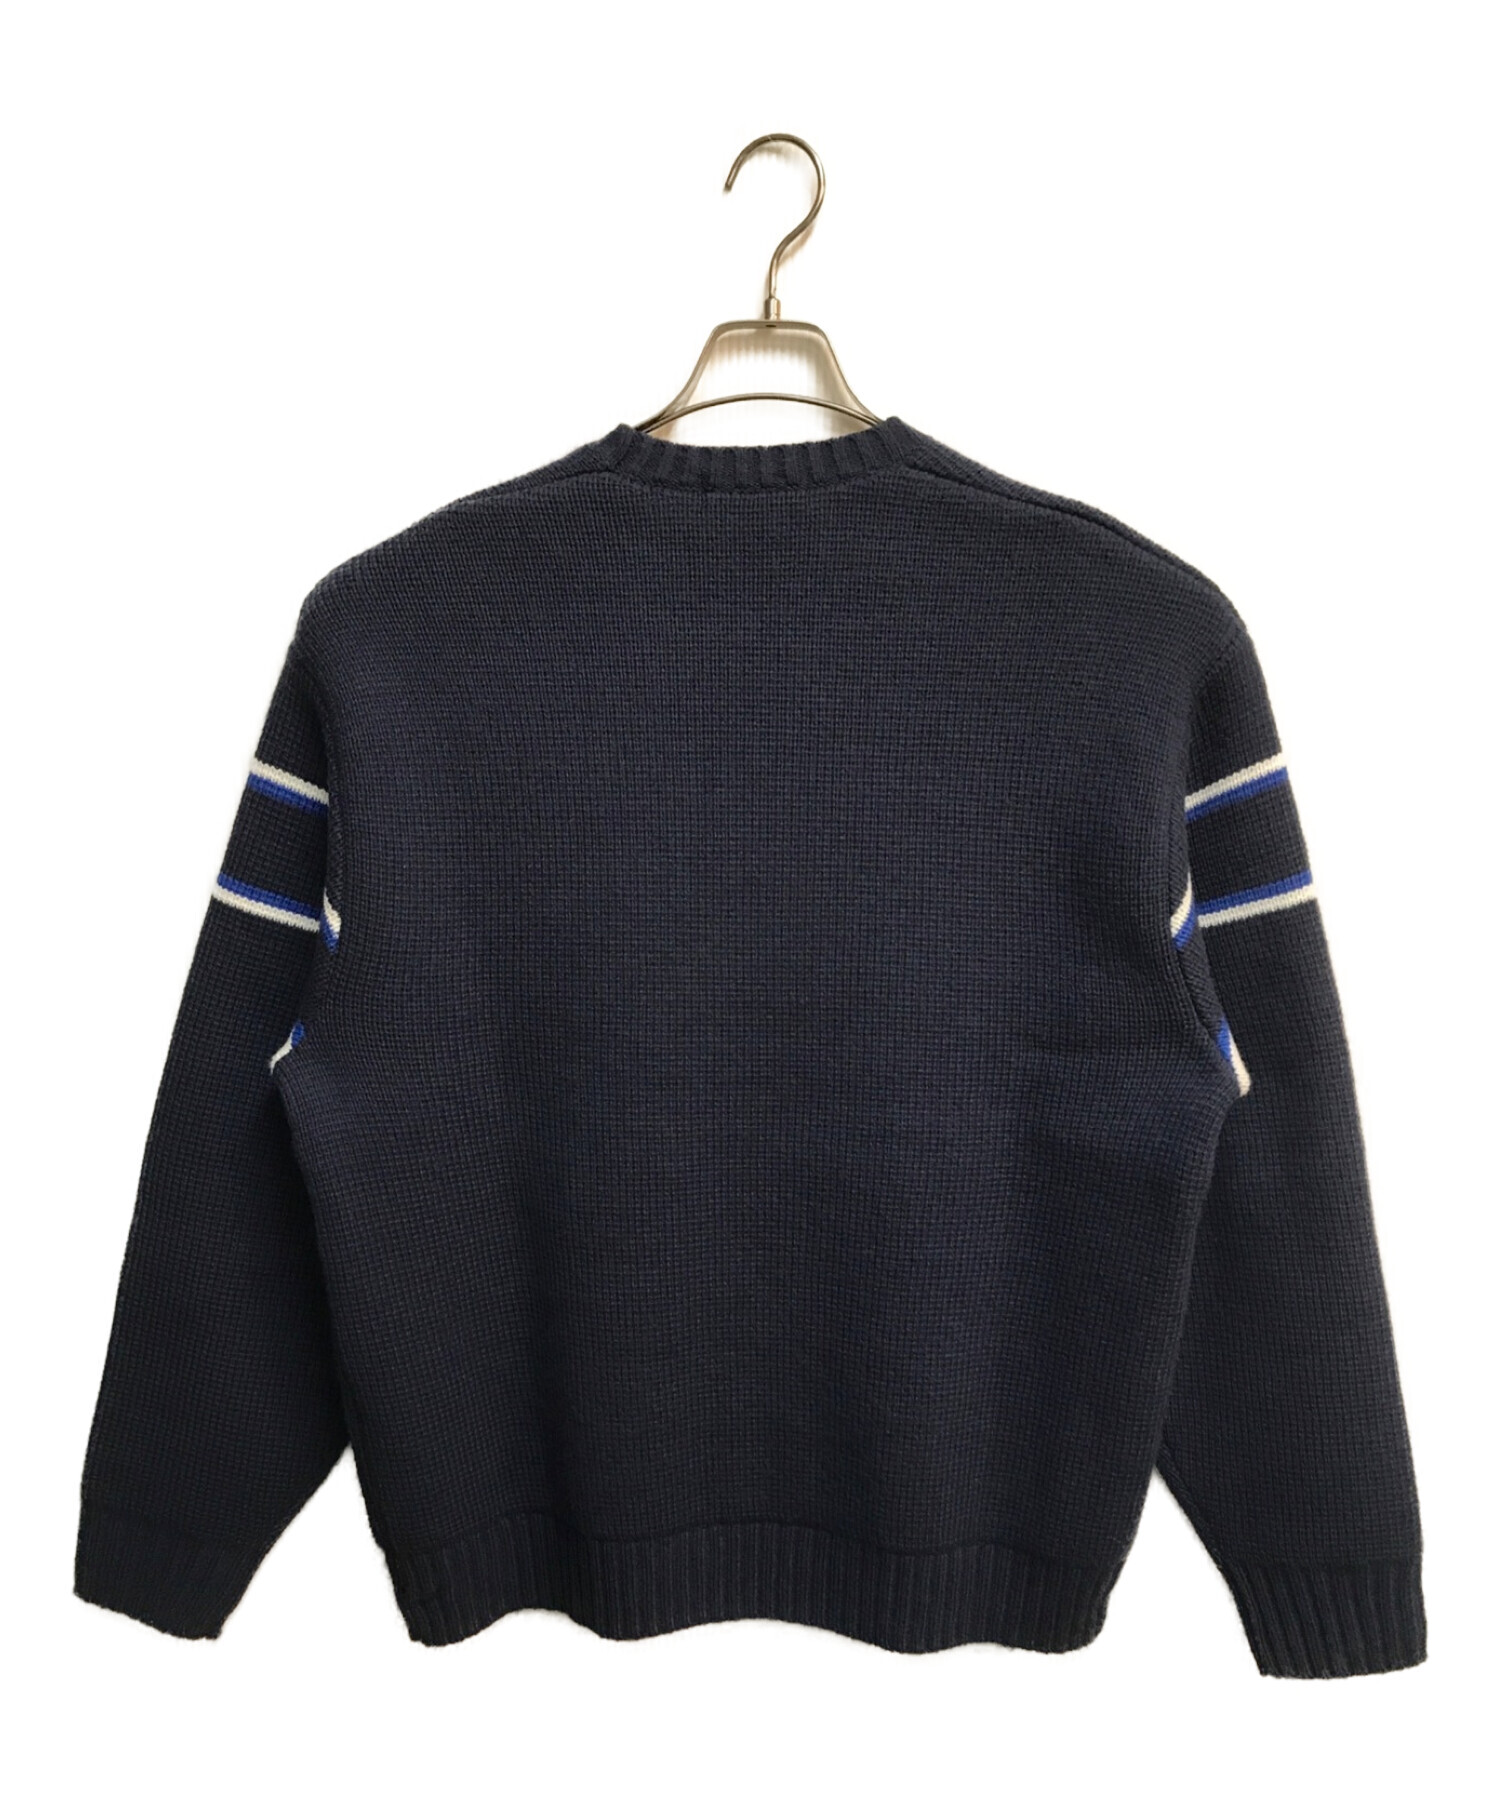 supSupreme Chest Stripe Sweater \